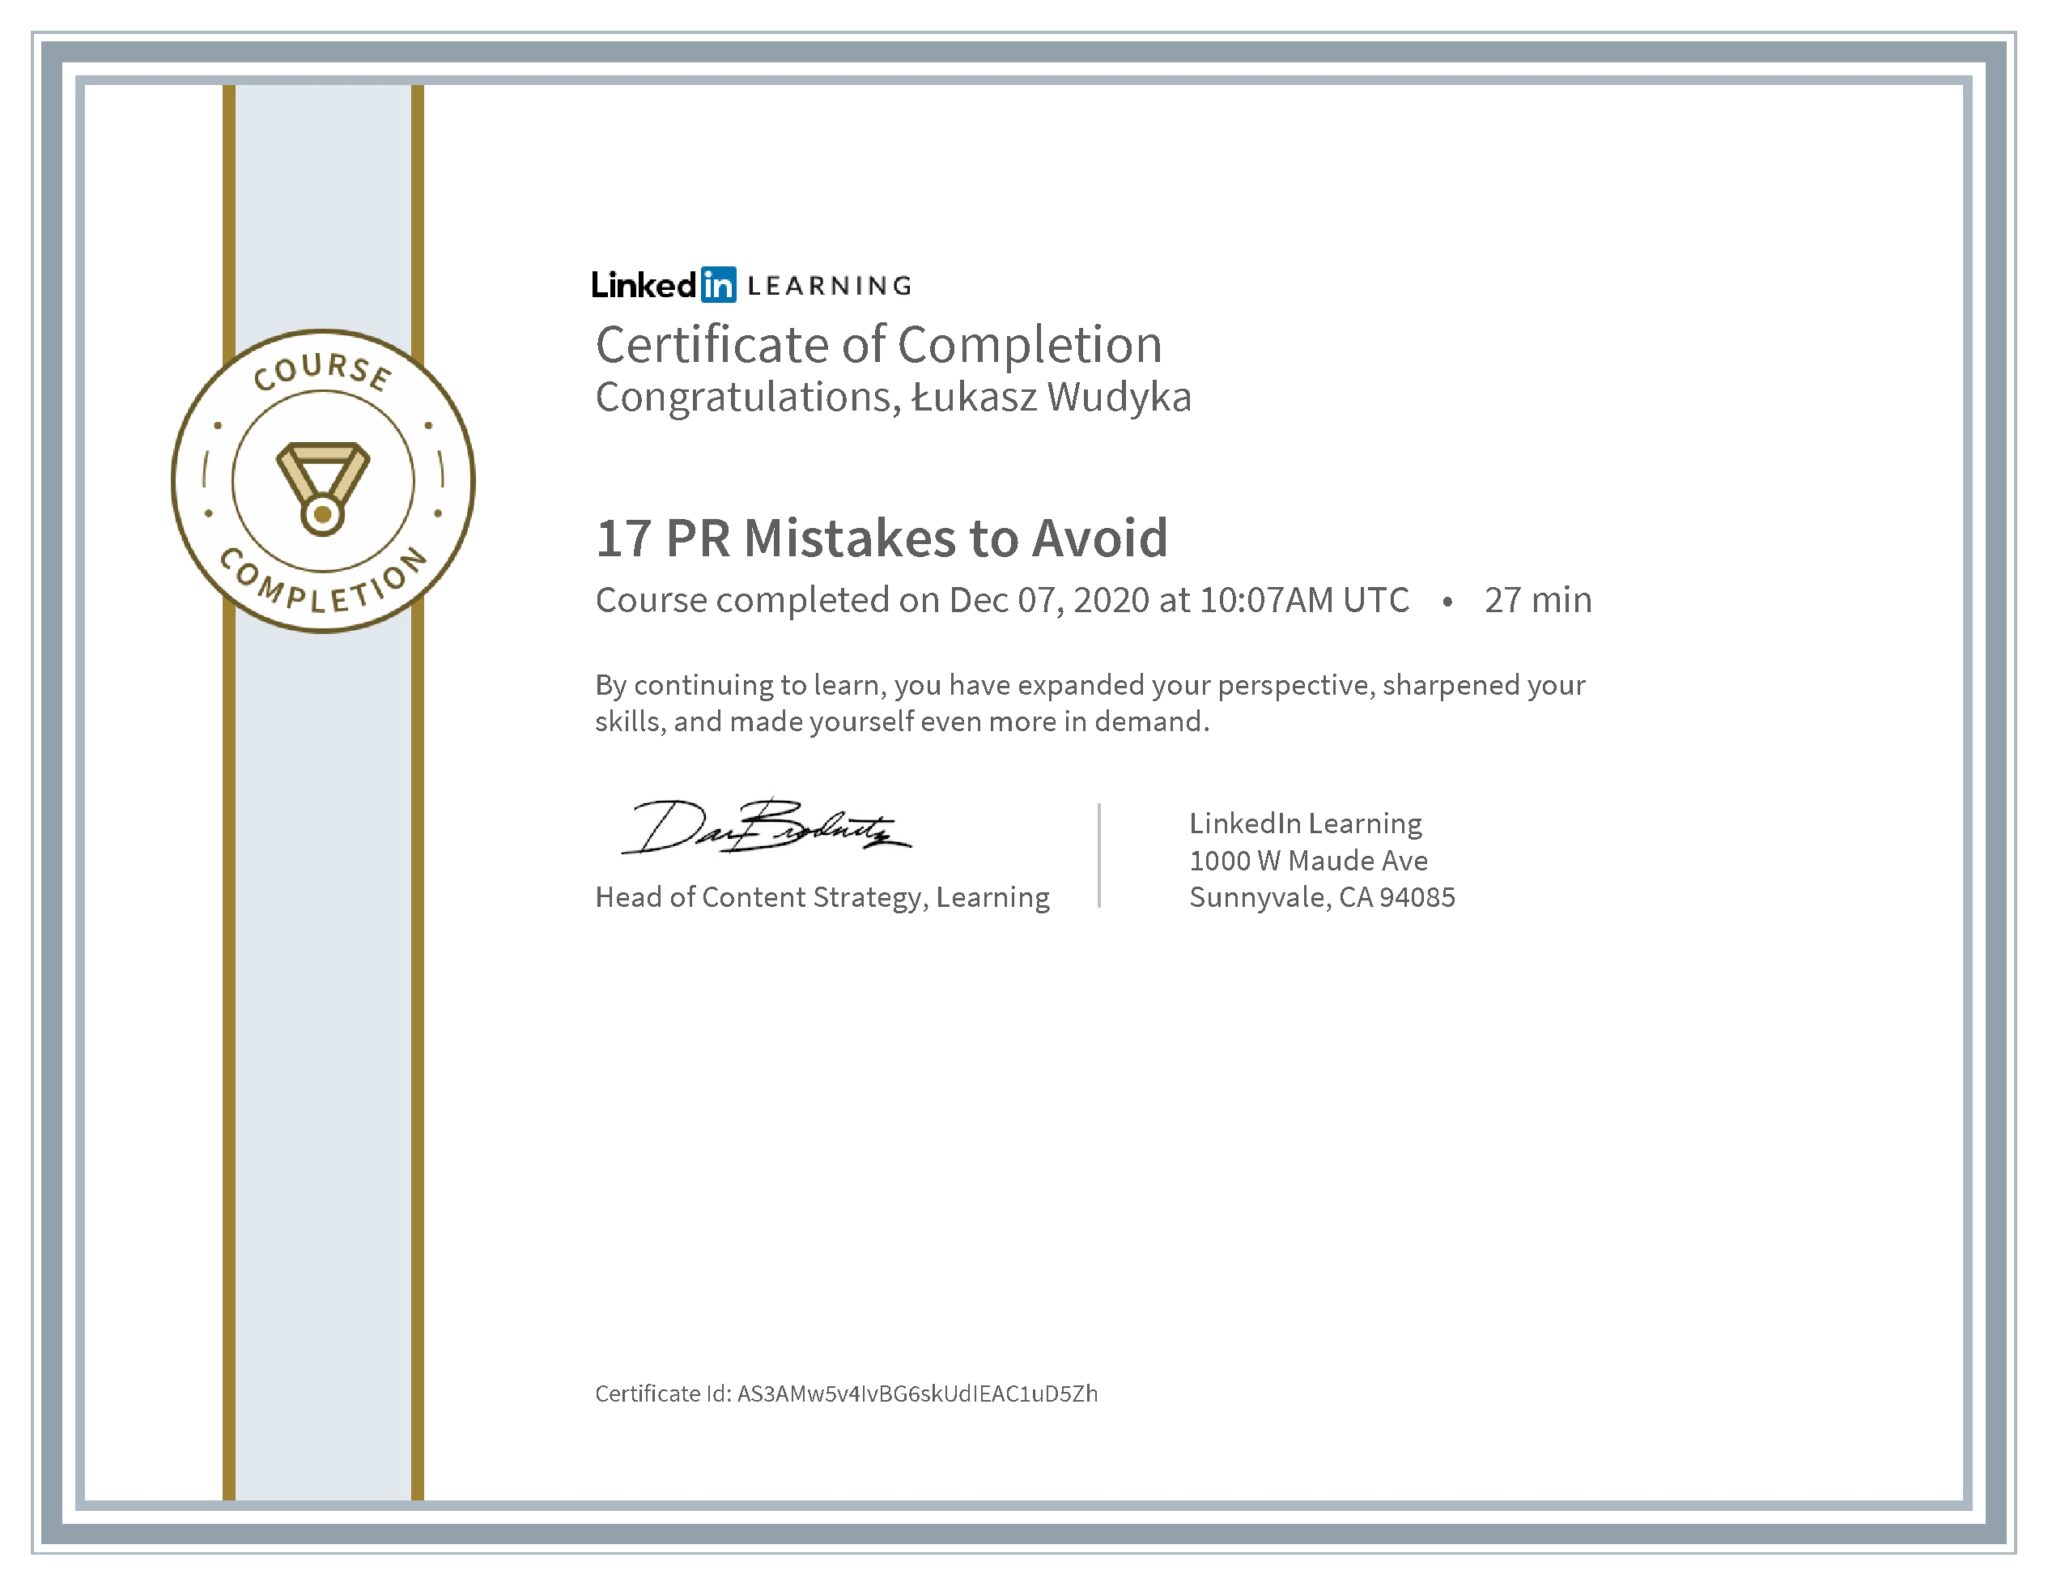 Łukasz Wudyka certyfikat LinkedIn 17 PR Mistakes to Avoid